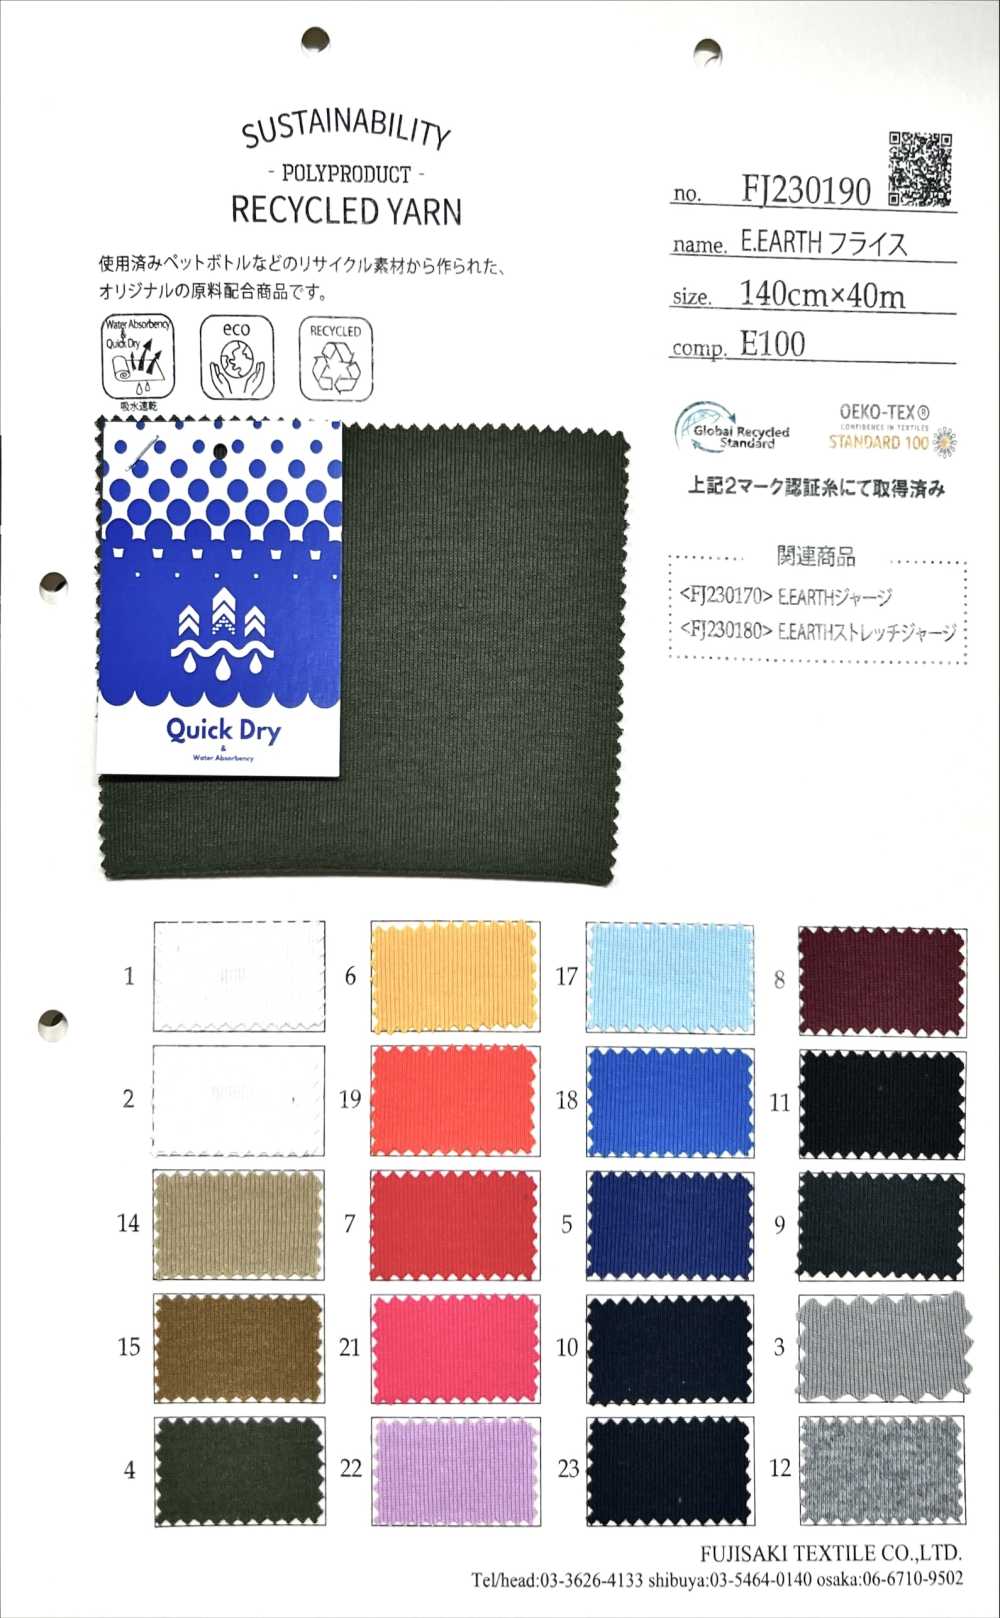 FJ230190 E.EARTH Rundrippe[Textilgewebe] Fujisaki Textile